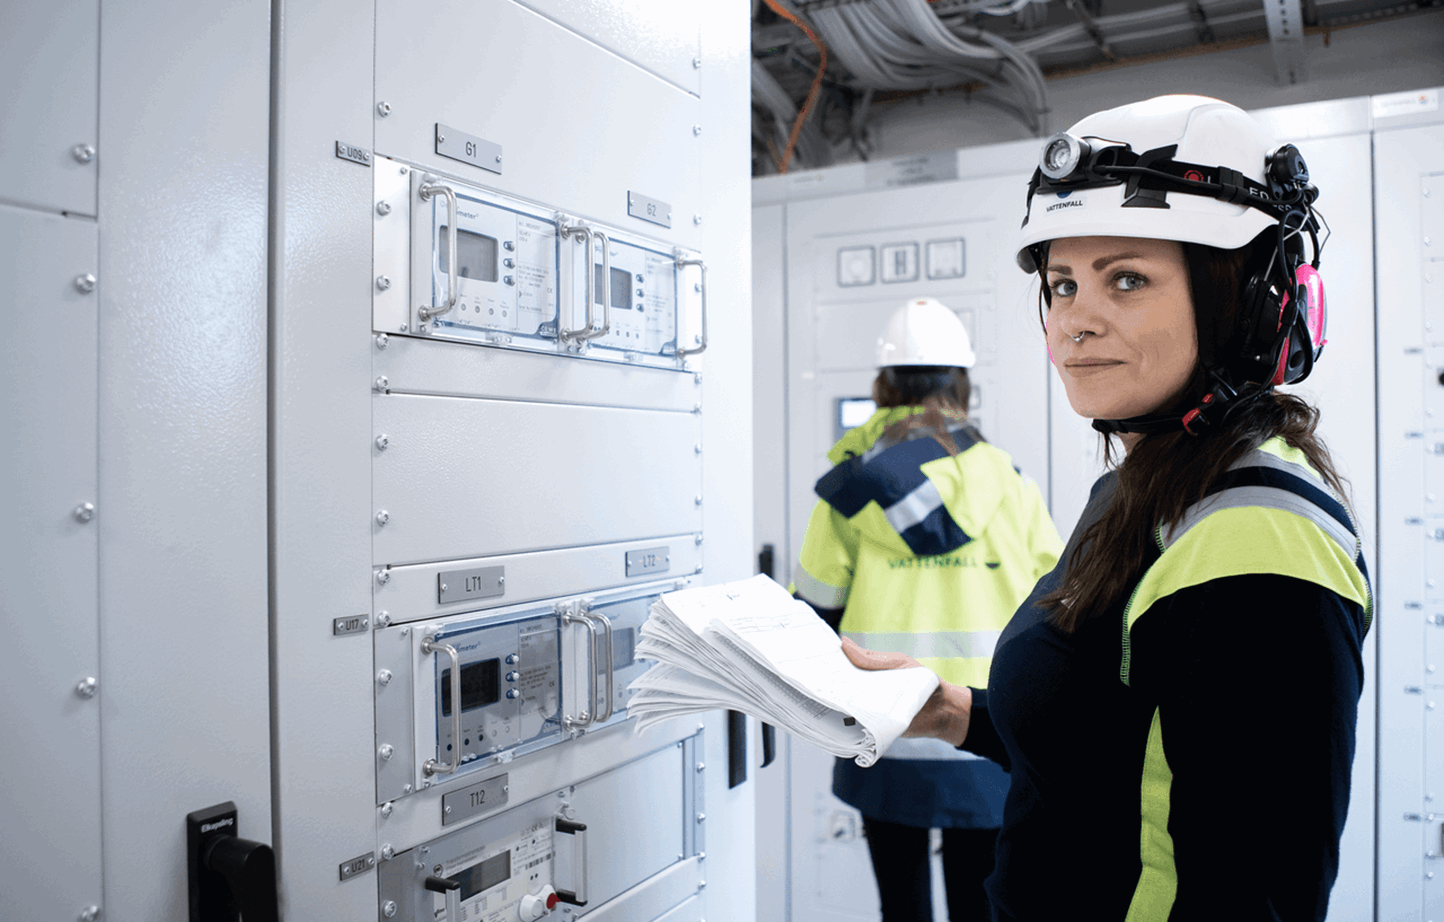 Vrouw met helm in elektriciteitscentrale